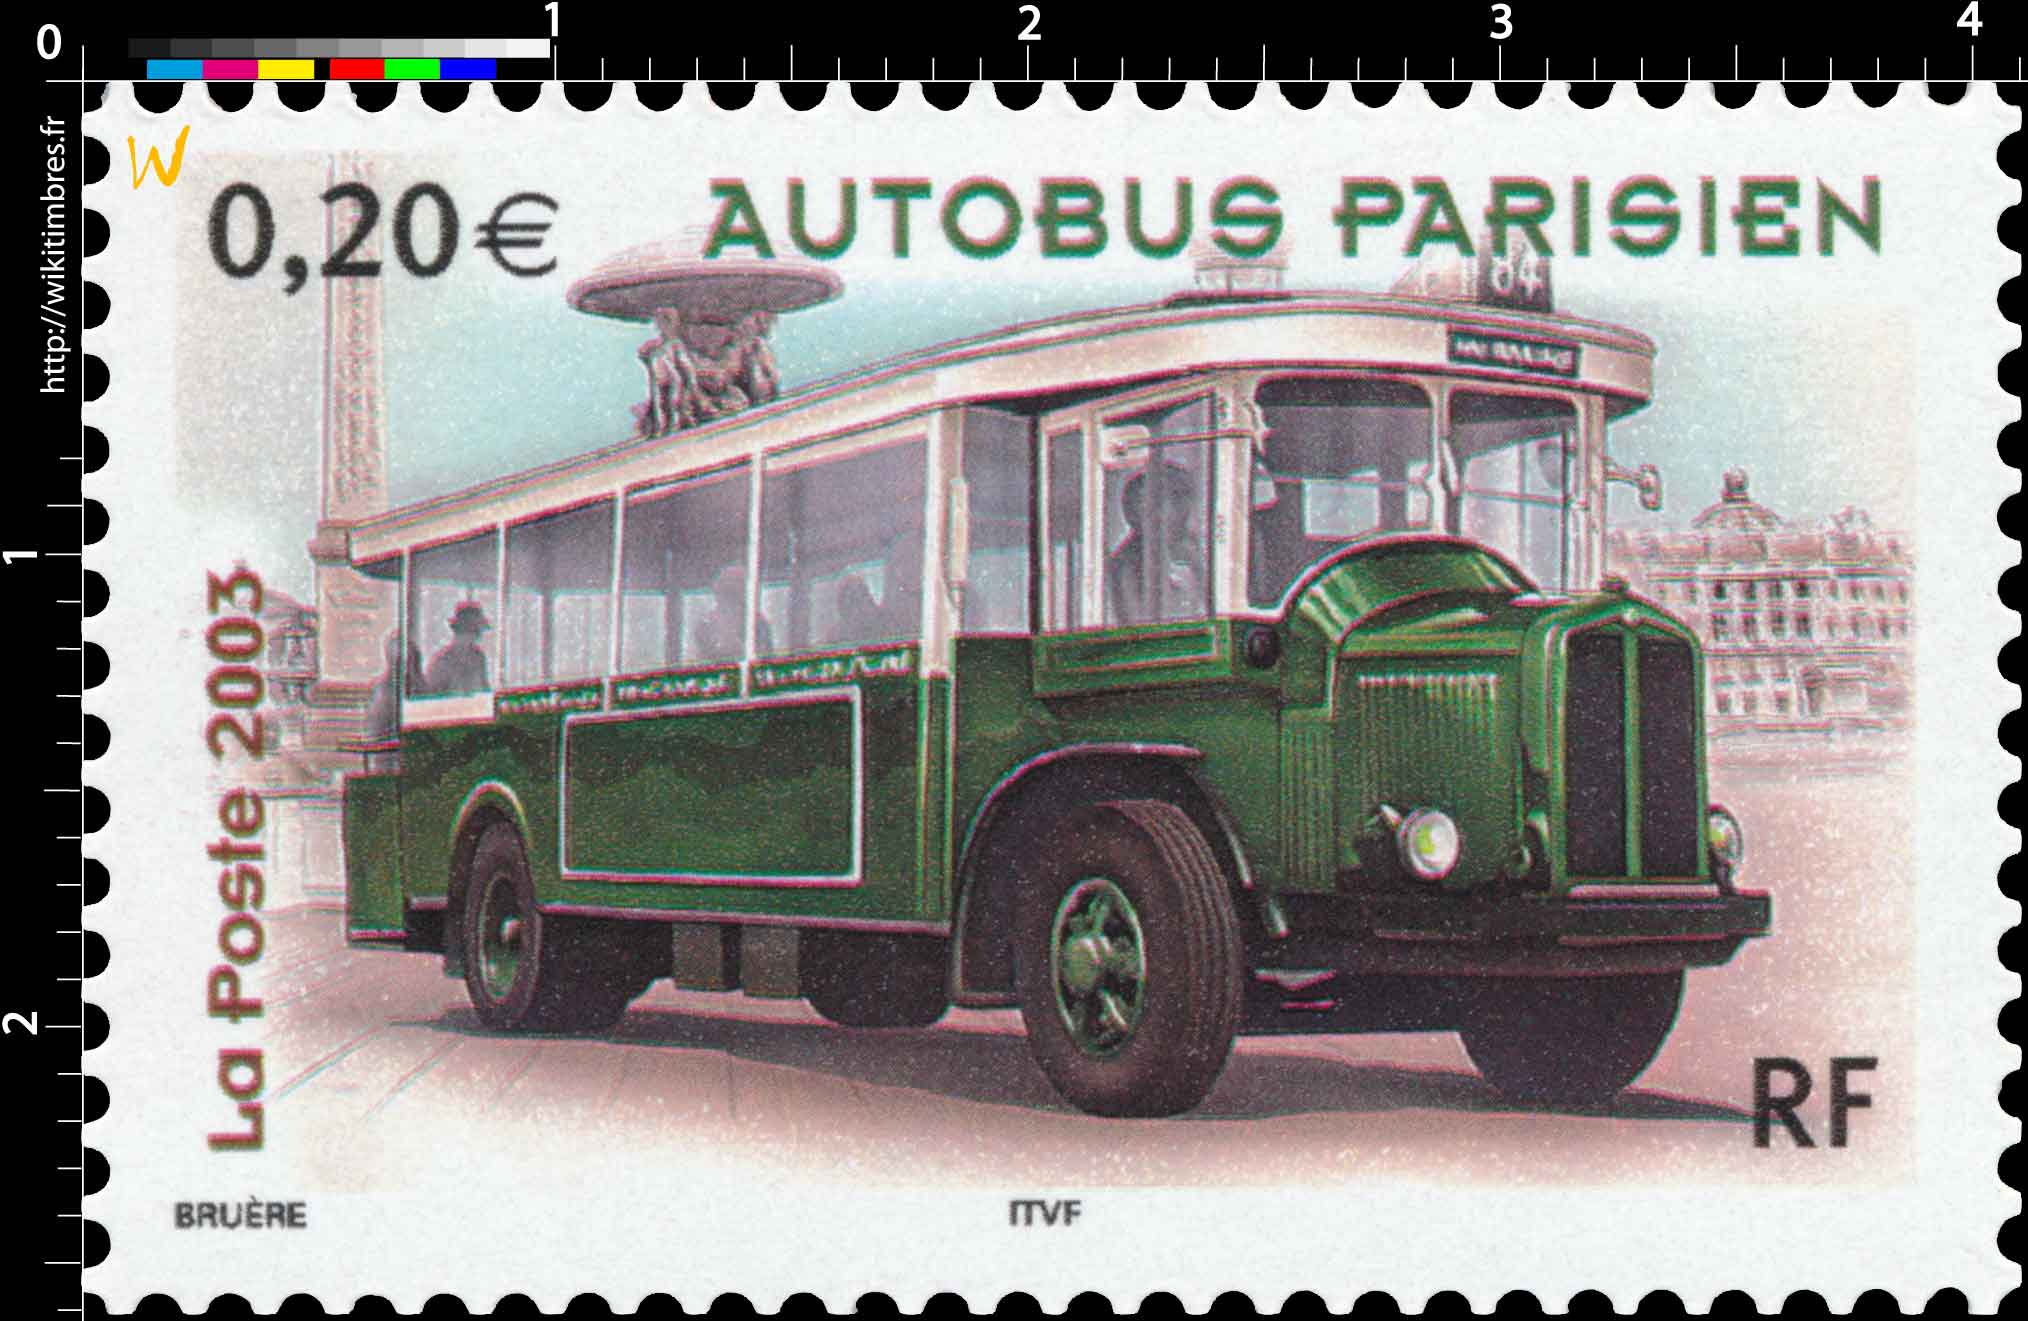 2003 AUTOBUS PARISIEN